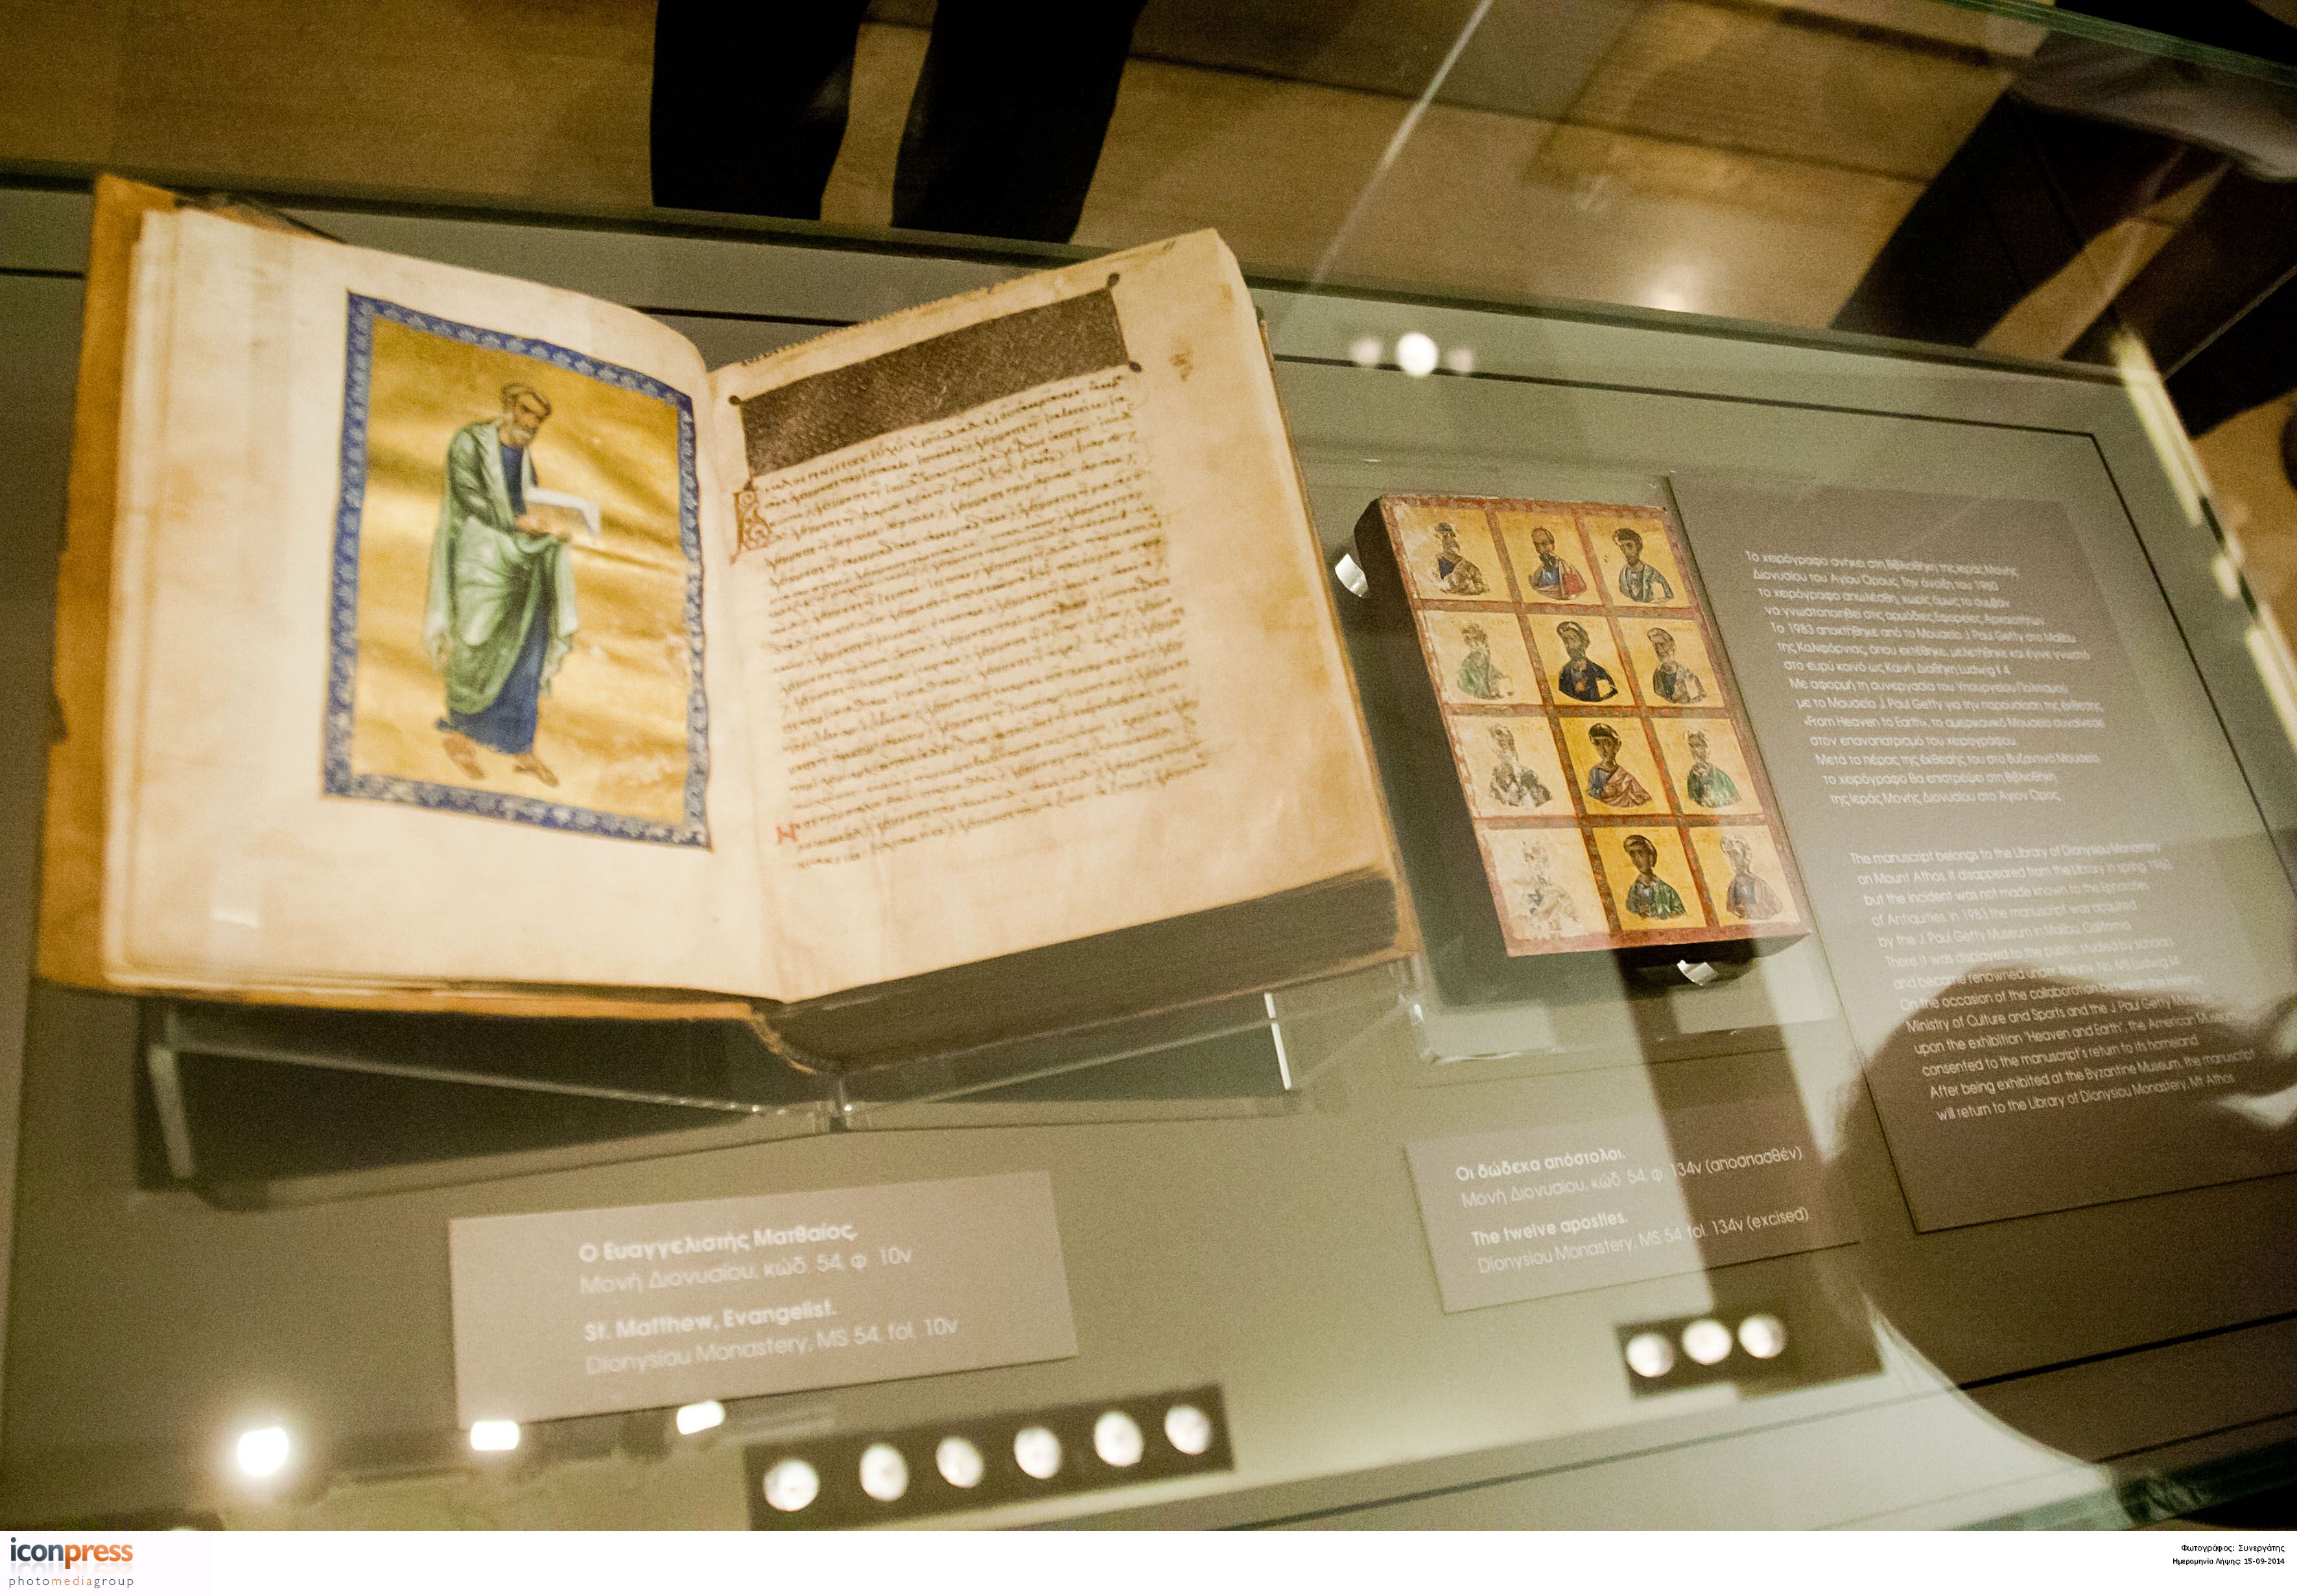 Κονιόρδου: Δεν ήταν βανδαλισμός το περιστατικό στο Βυζαντινό Μουσείο